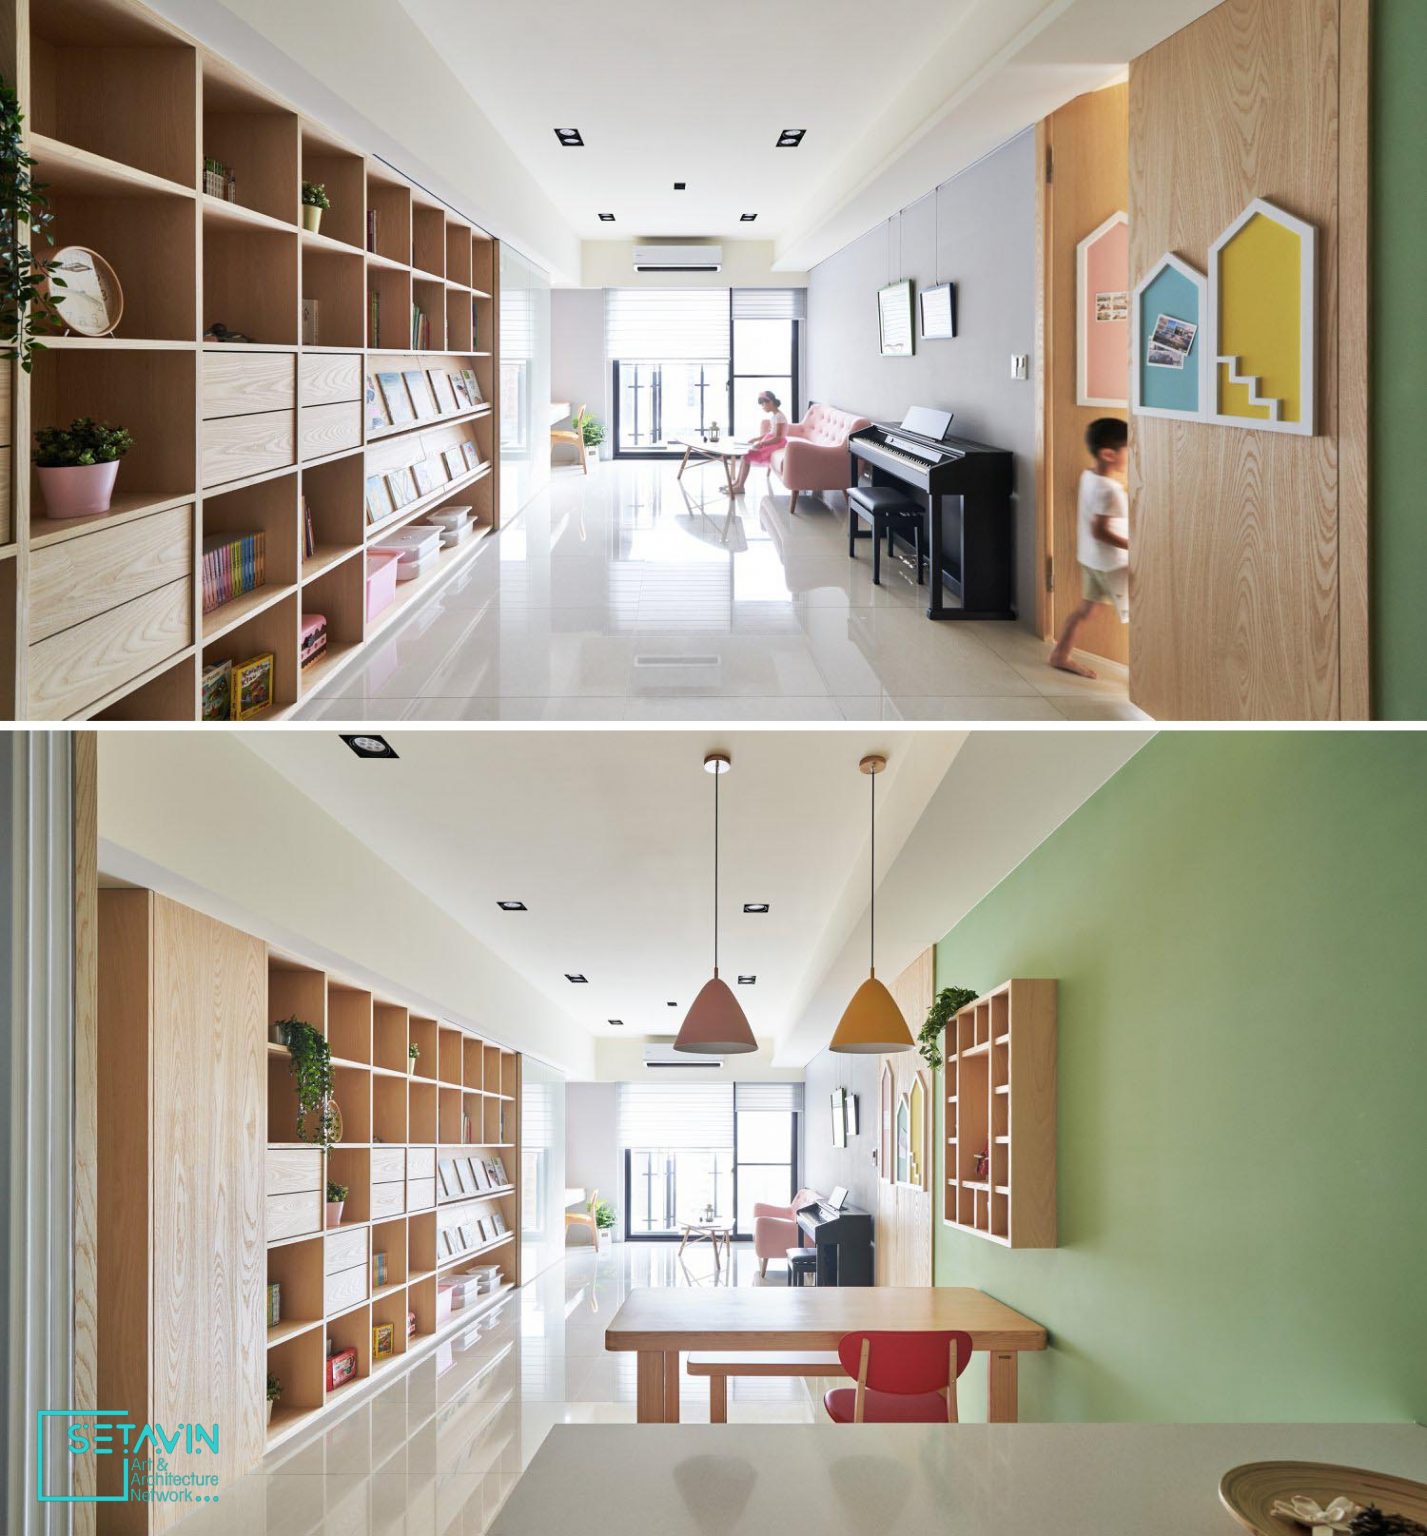 وایت برد کشویی ویژگی اصلی طراحی اتاق کودک در این آپارتمان